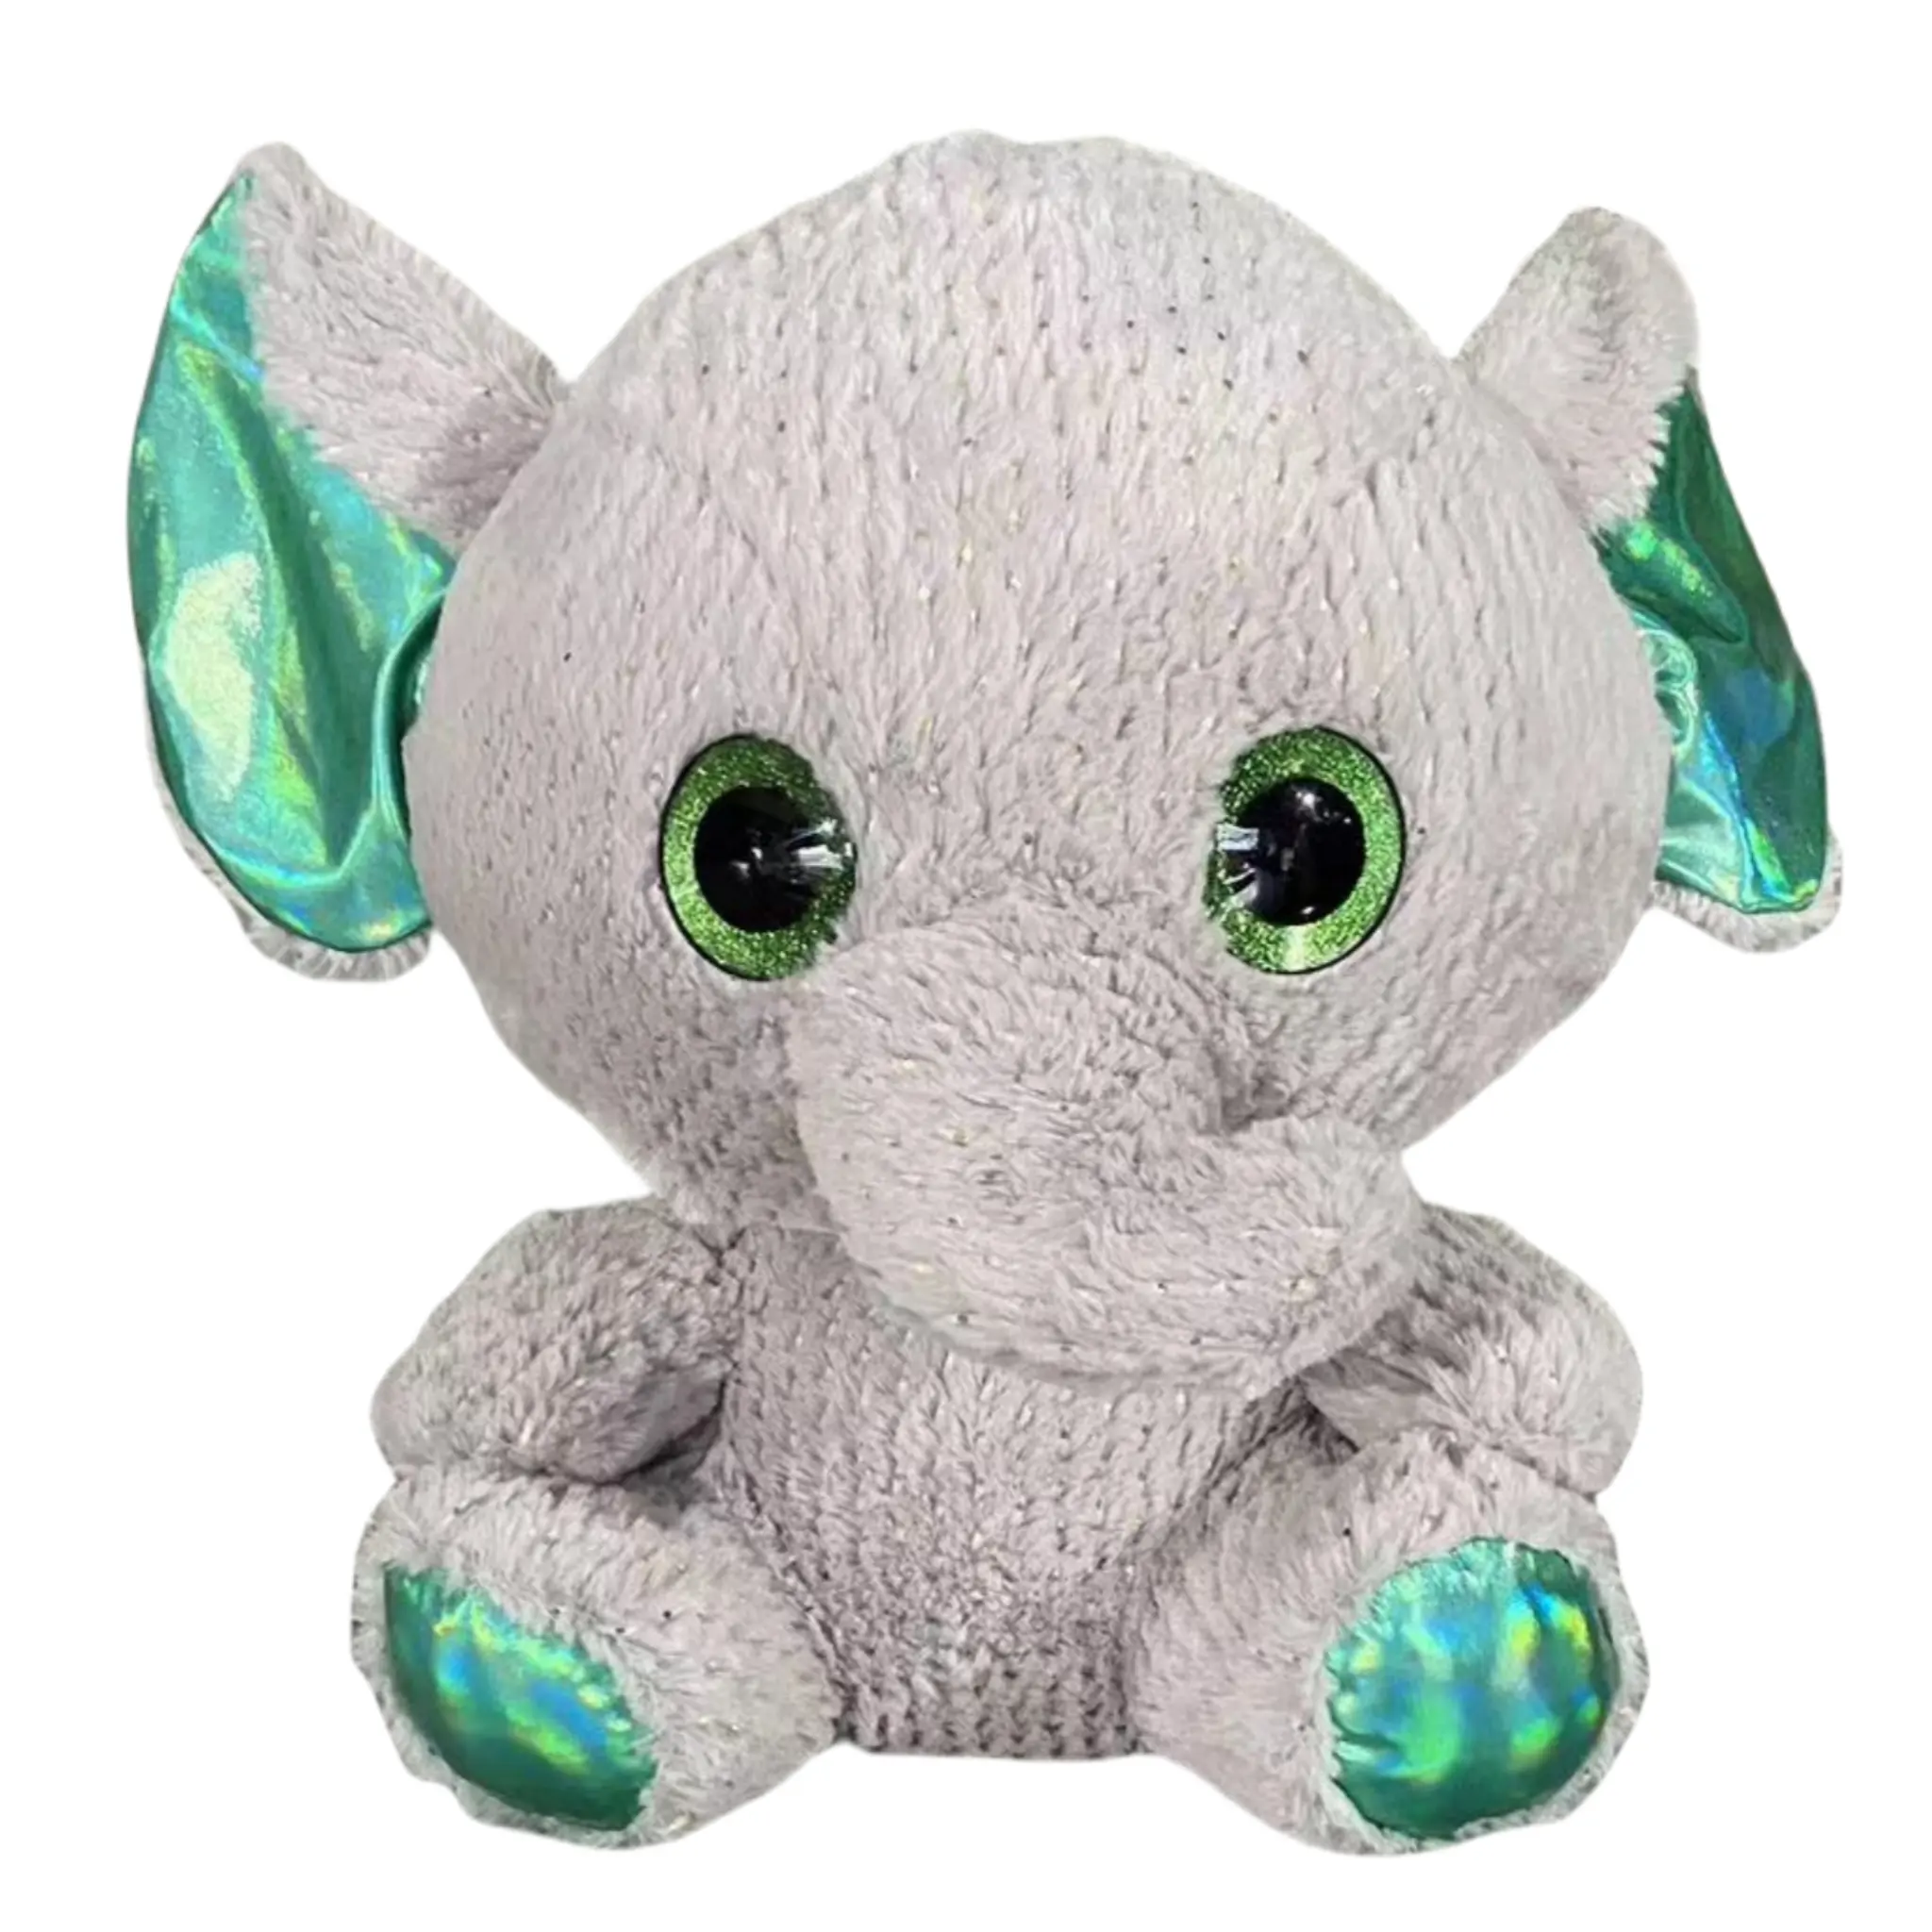 Flash big eyes oem custom stuffed animals elephant plush soft toy toys stuffed animal Factory Customized plush toy skin